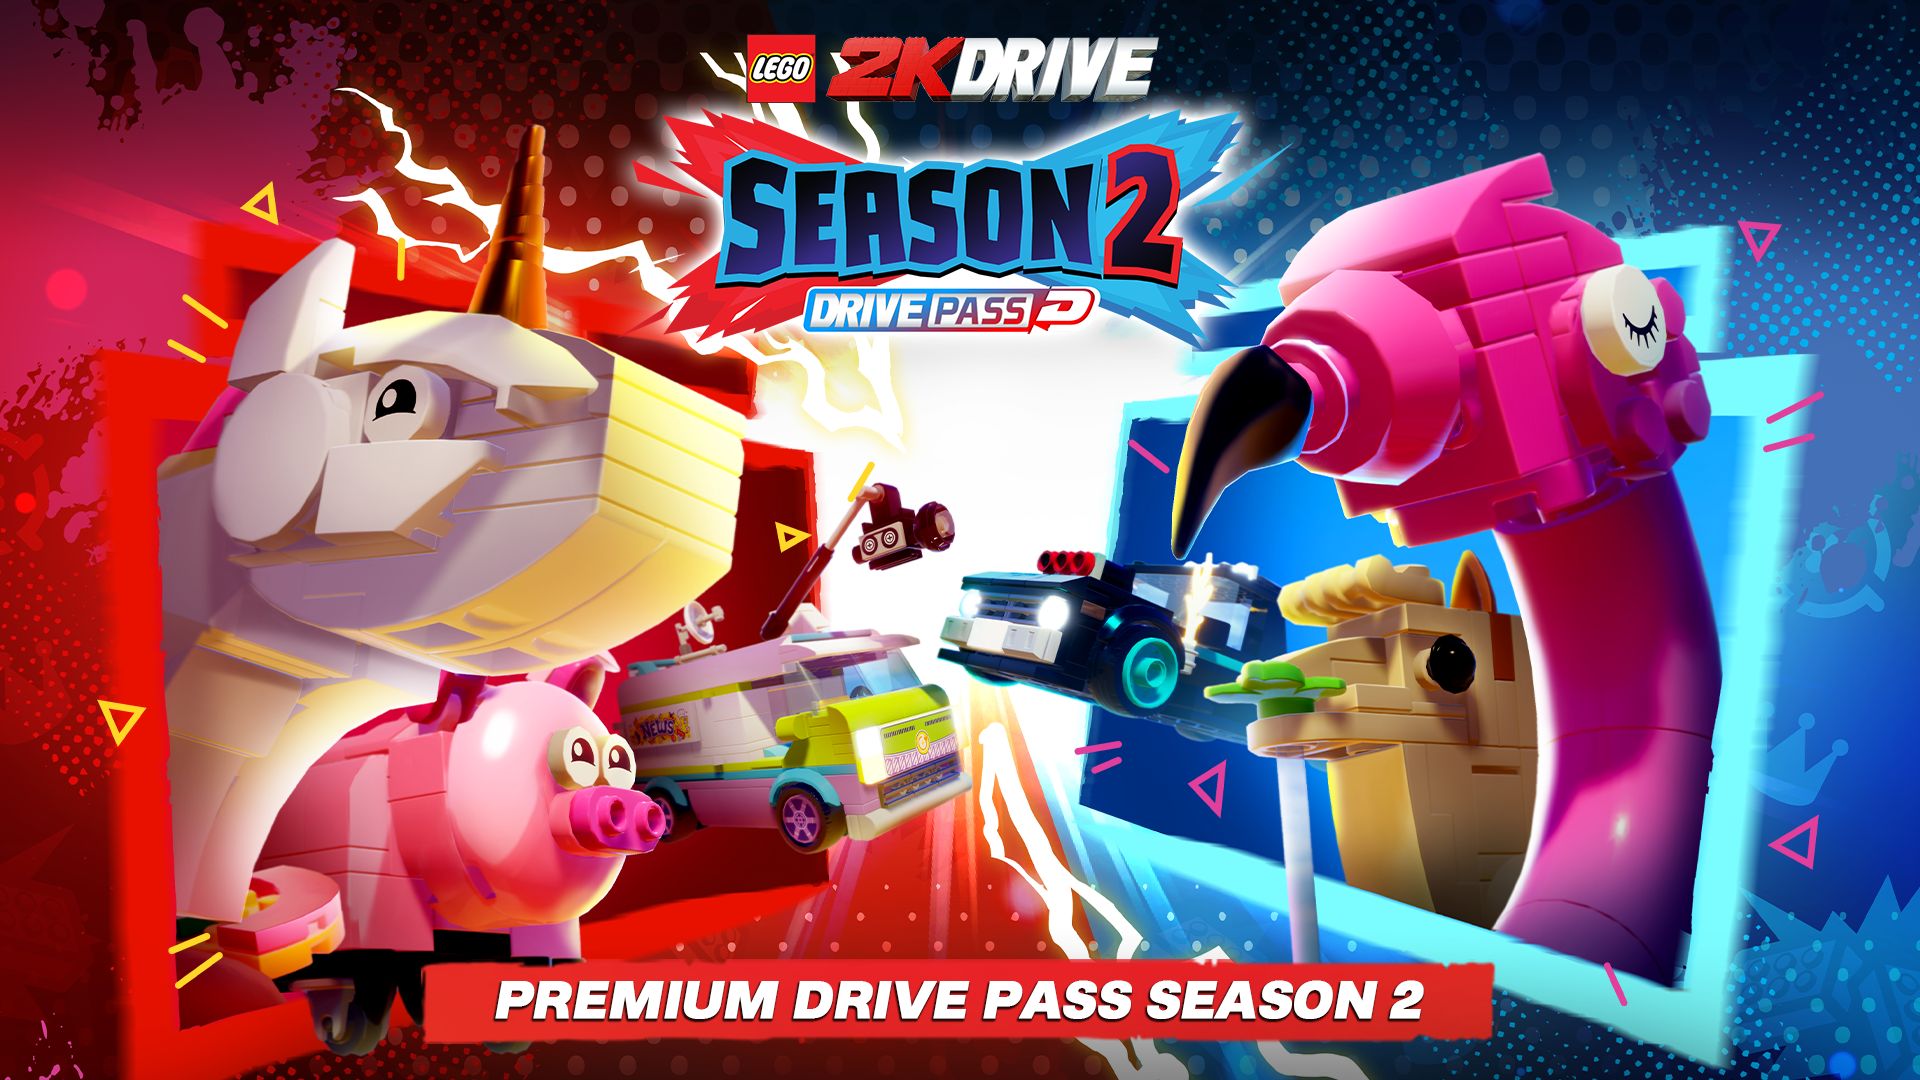 LEGO® 2K Drive Premium Drive Pass Season 2